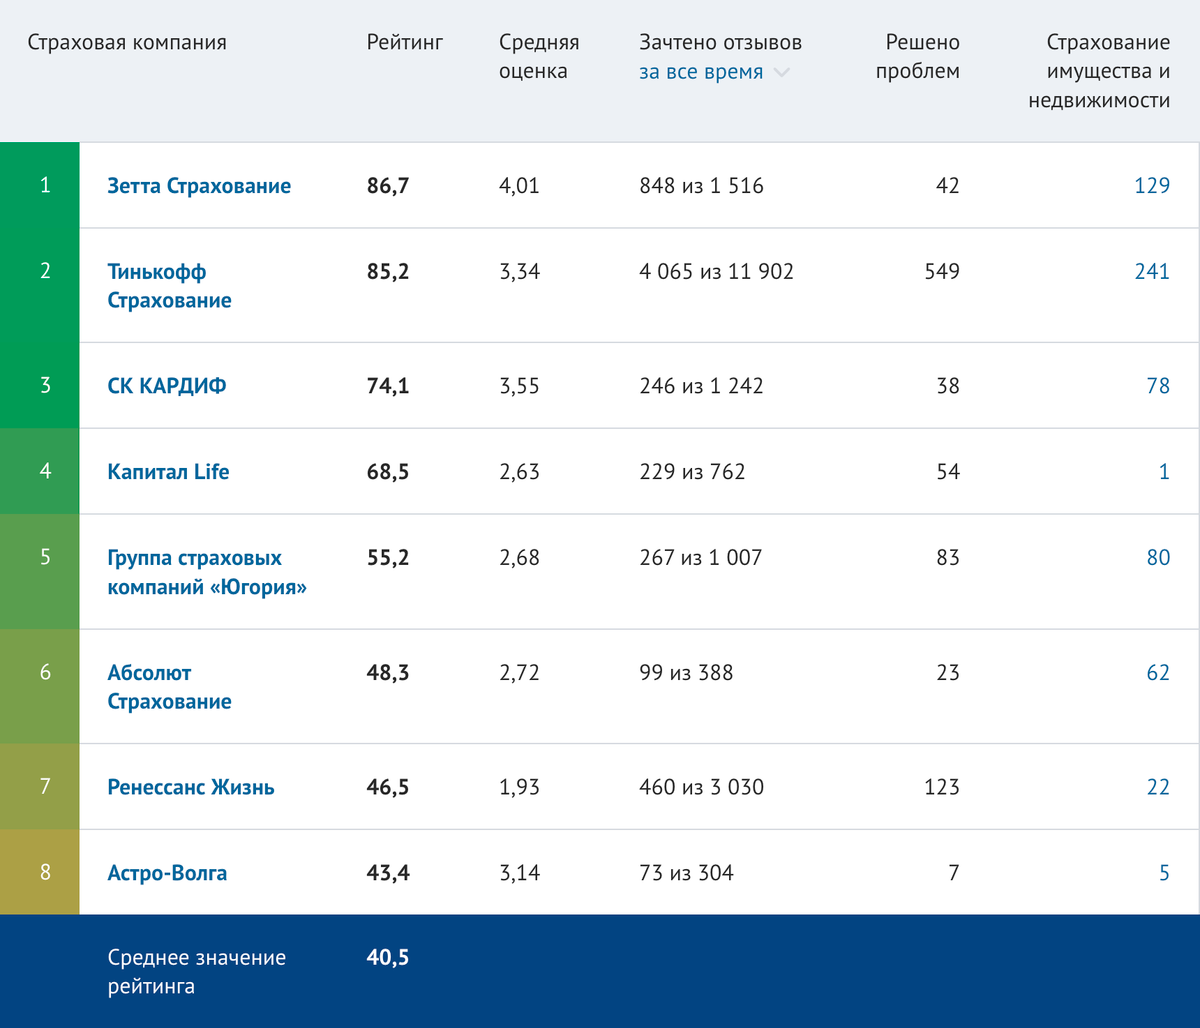 Рейтинг страховых компаний в сфере страхования имущества и недвижимости. Источник: banki.ru